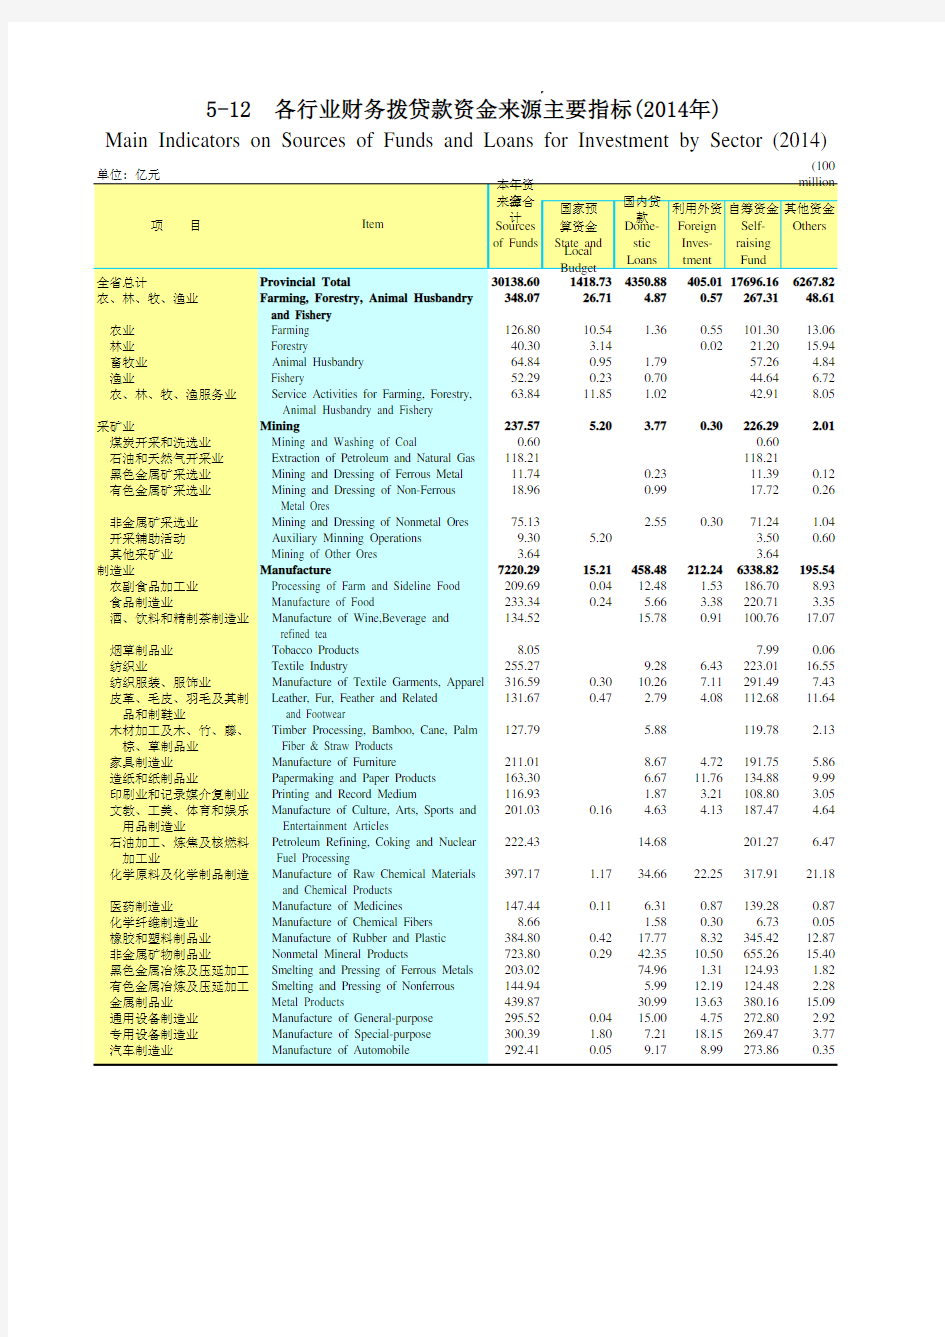 广东统计年鉴2015社会经济发展指标：各行业财务拨贷款资金来源主要指标(2014年)